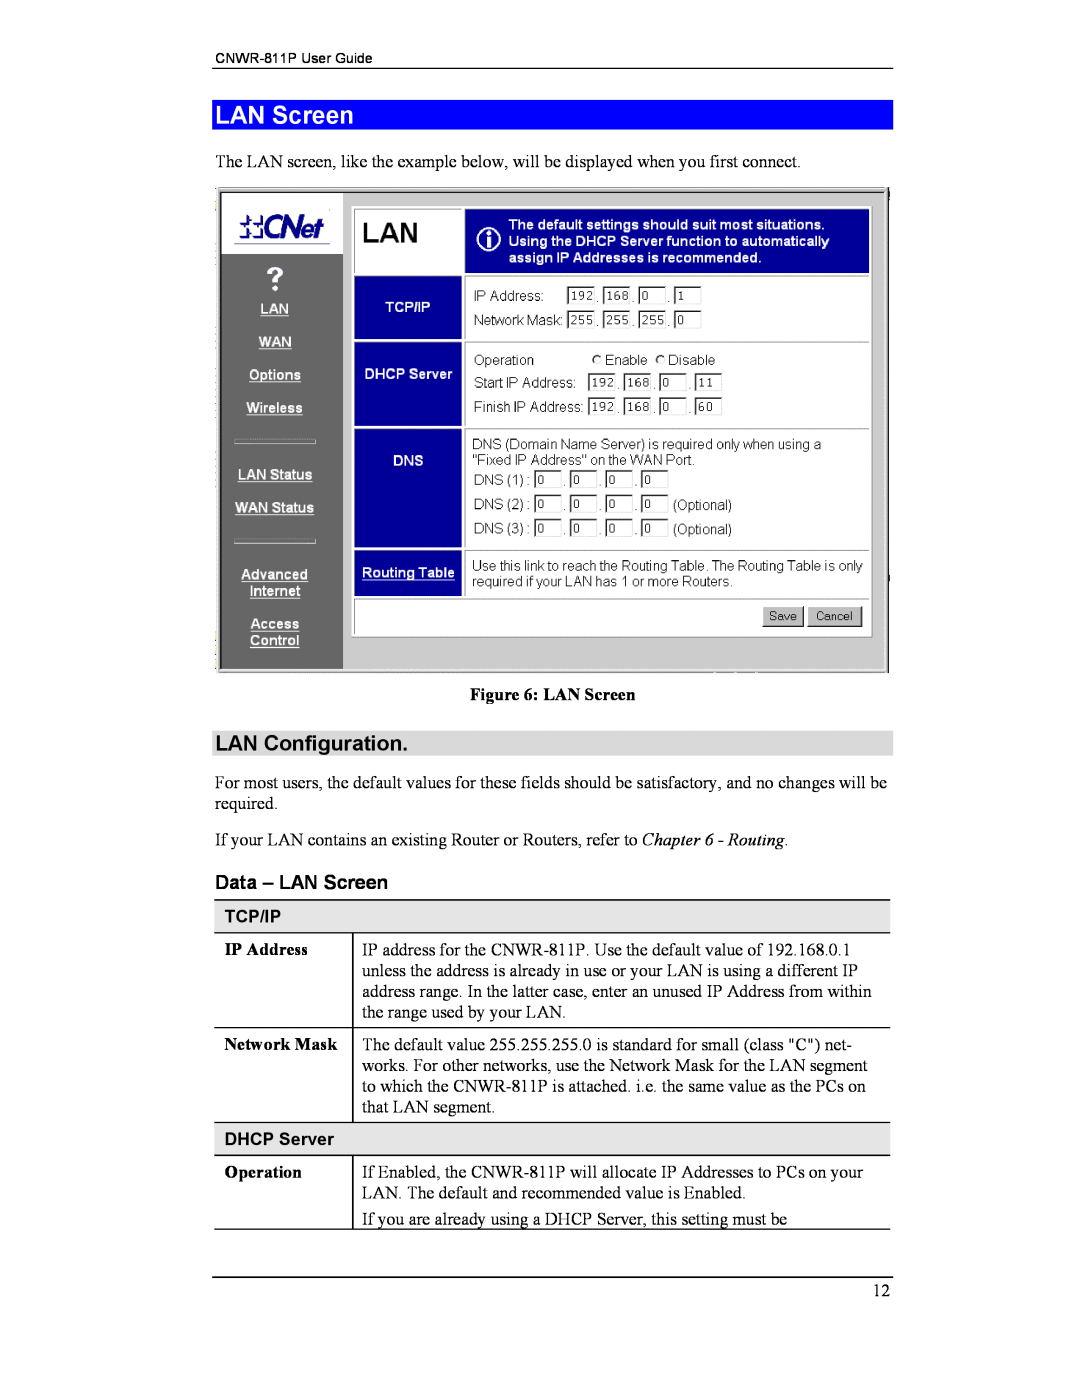 CNET CNWR-811P manual LAN Configuration, Data - LAN Screen, Tcp/Ip, DHCP Server 